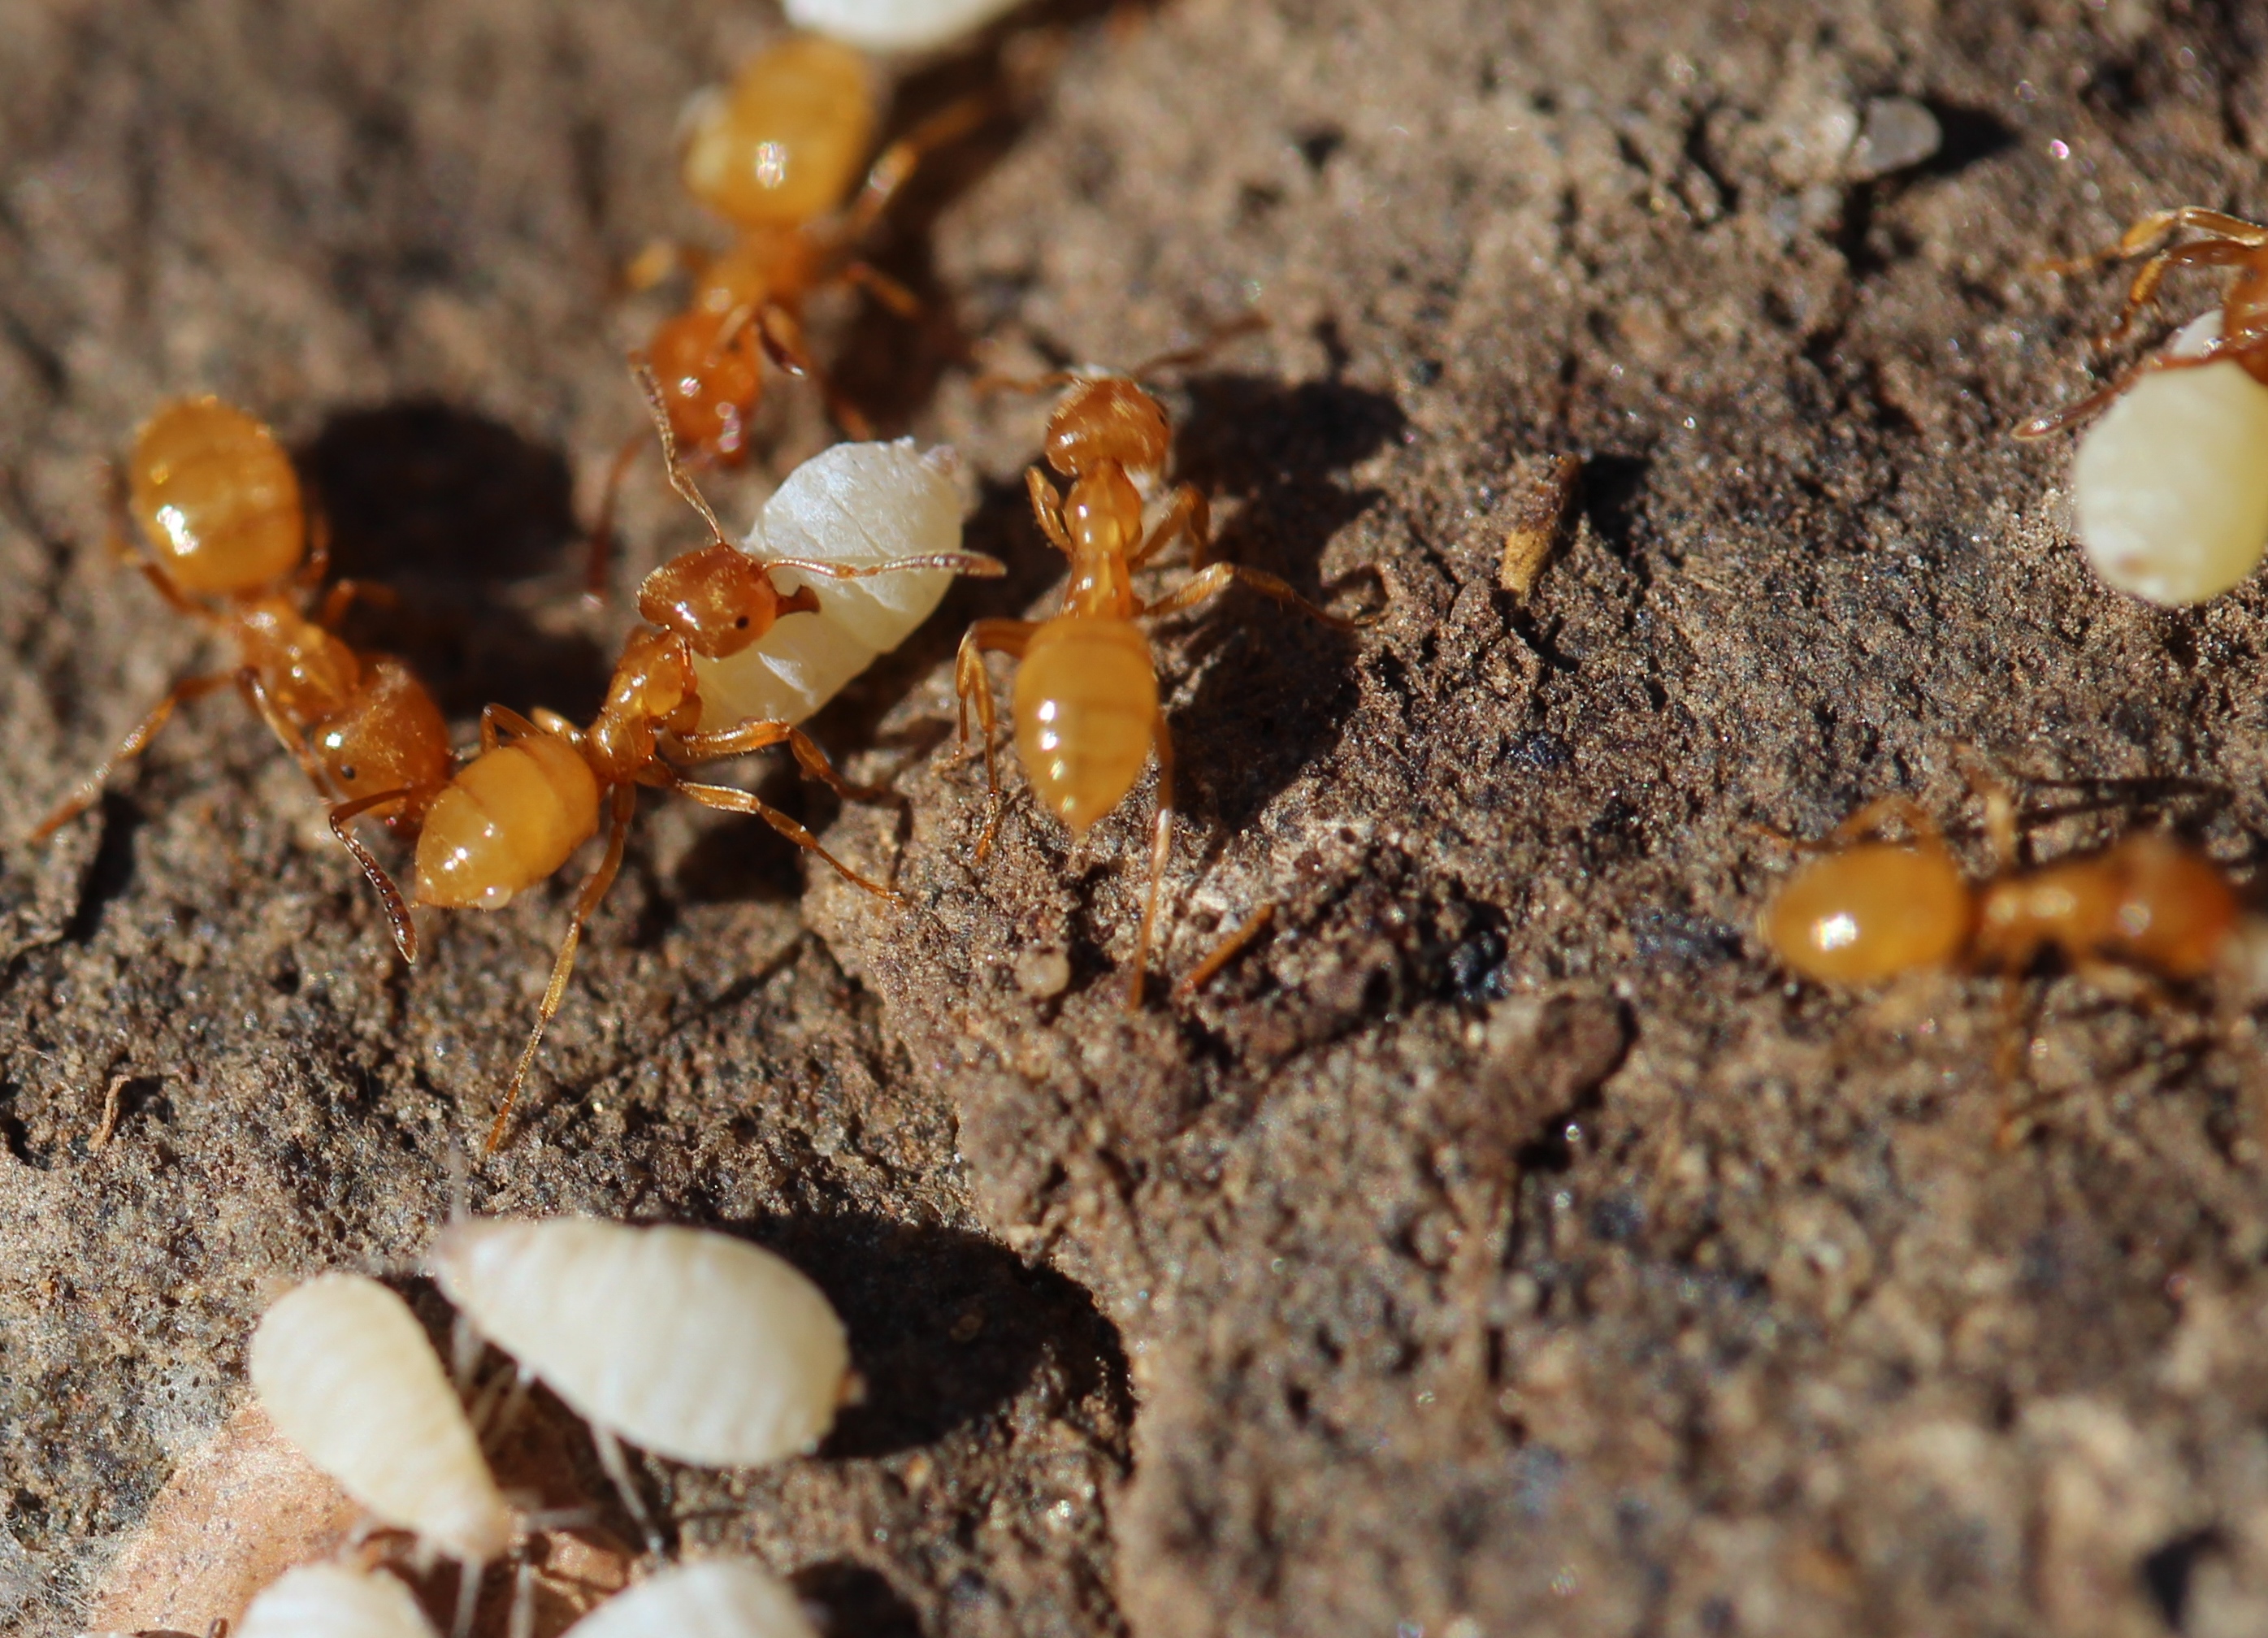 Citronella Ant Control: Get Rid of Citronella Ants